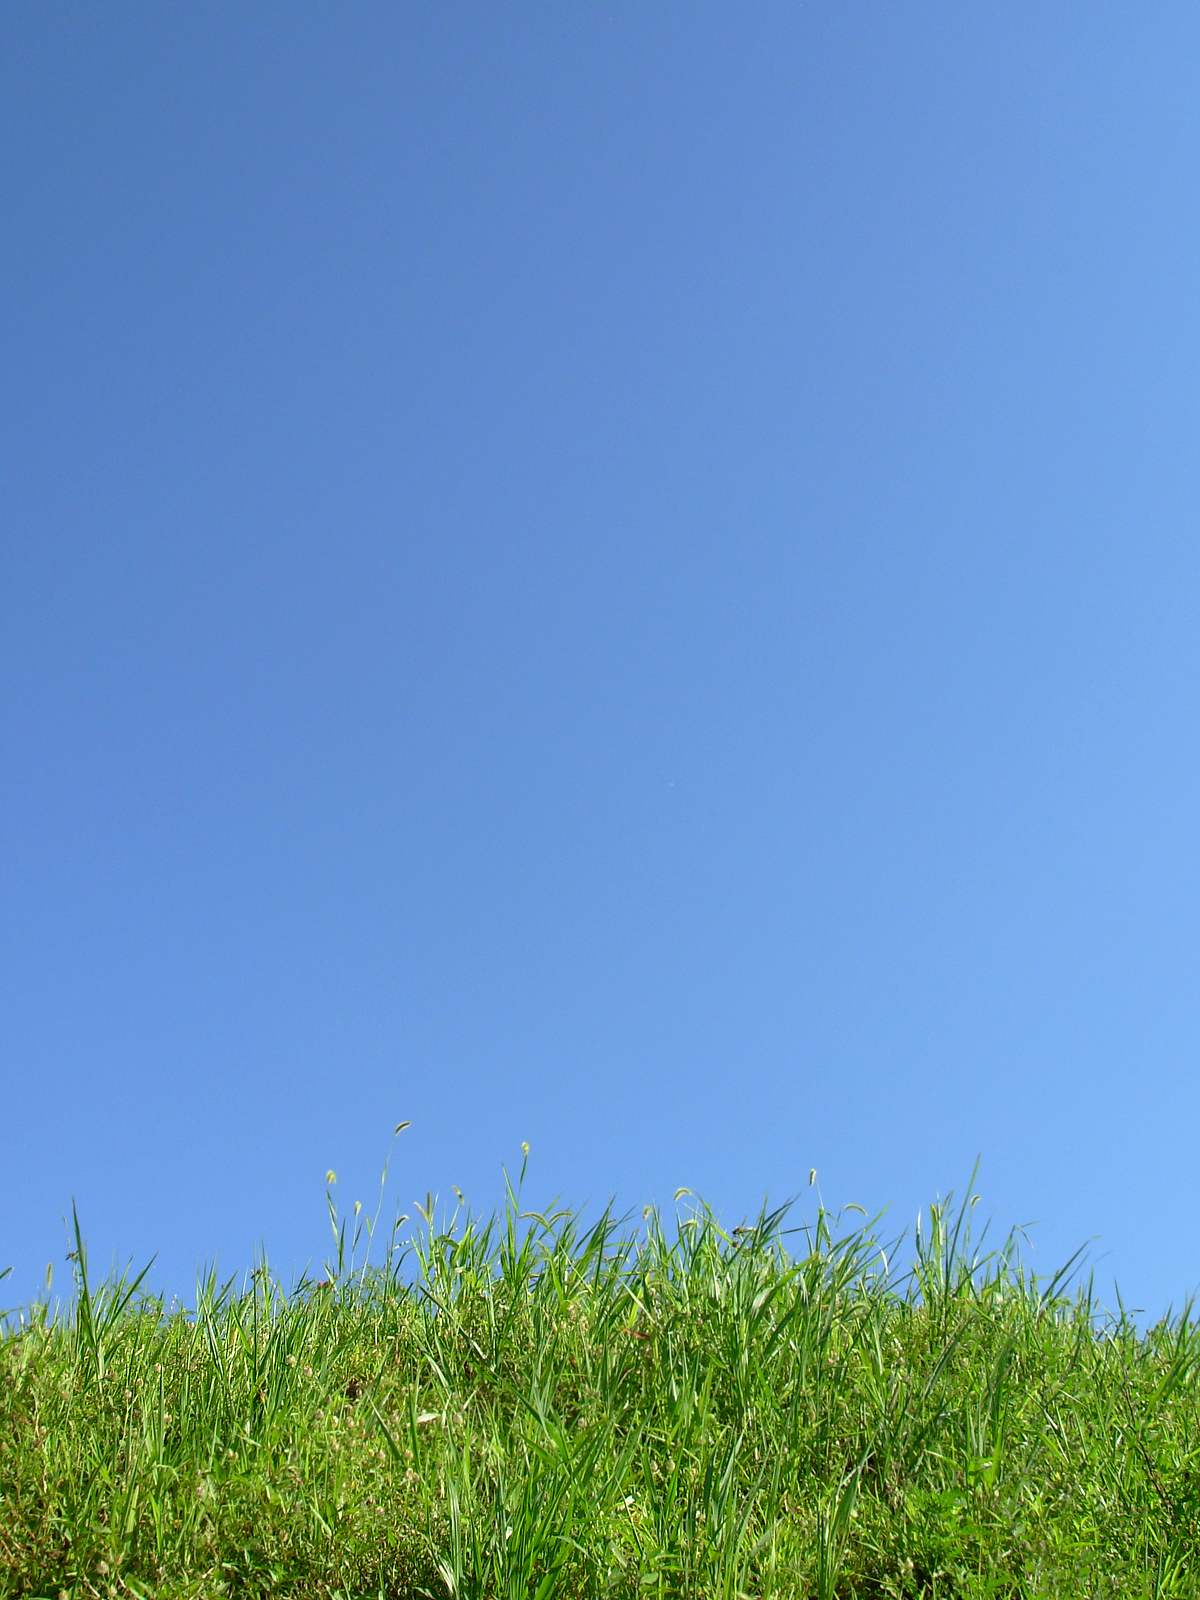 Green grass agains a clear sky photo